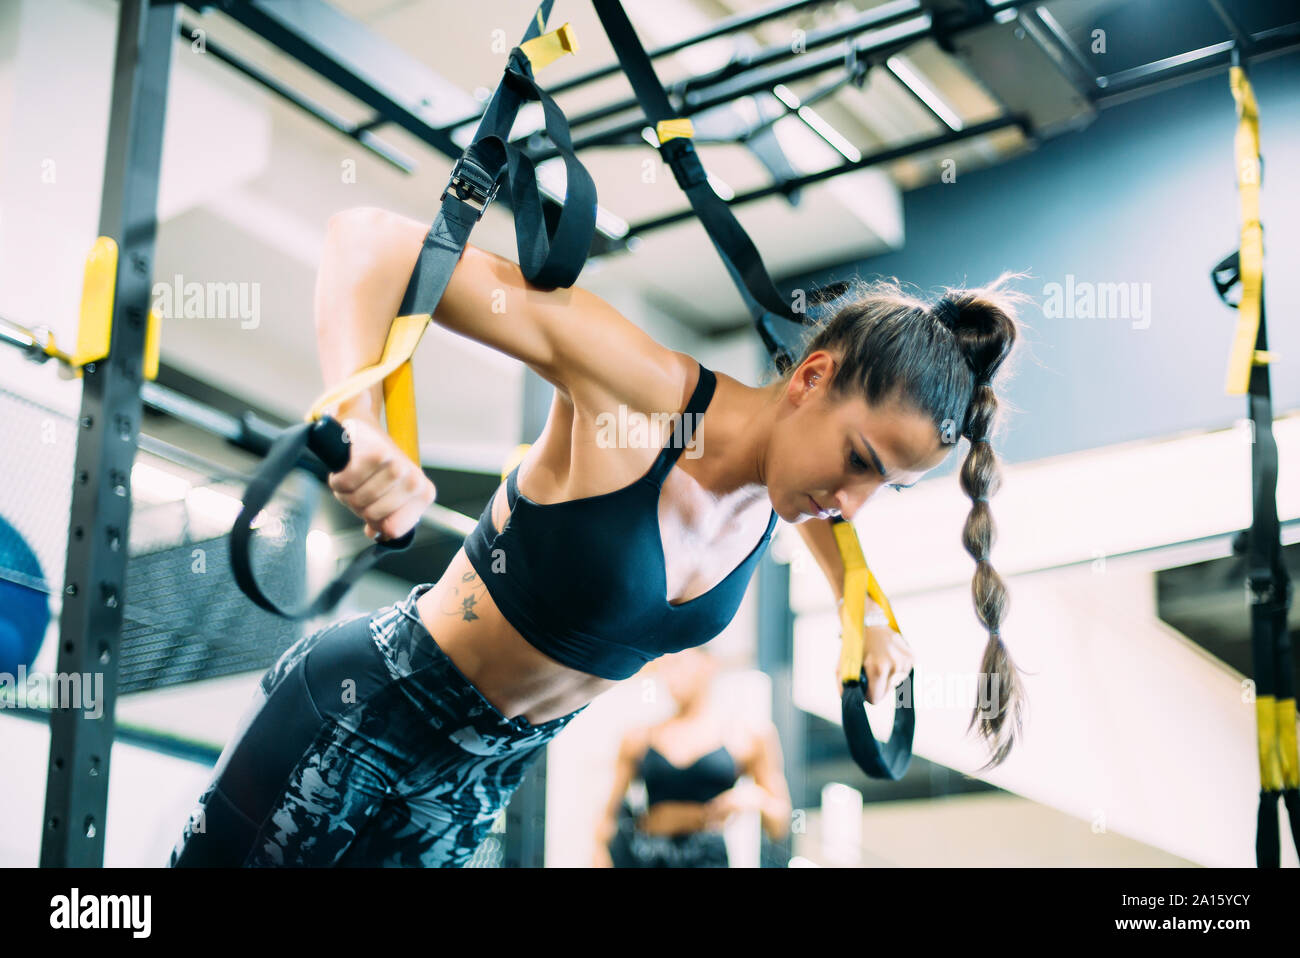 Junge Frau im Fitnessstudio tun Fitness Übungen mit Sport Gurte